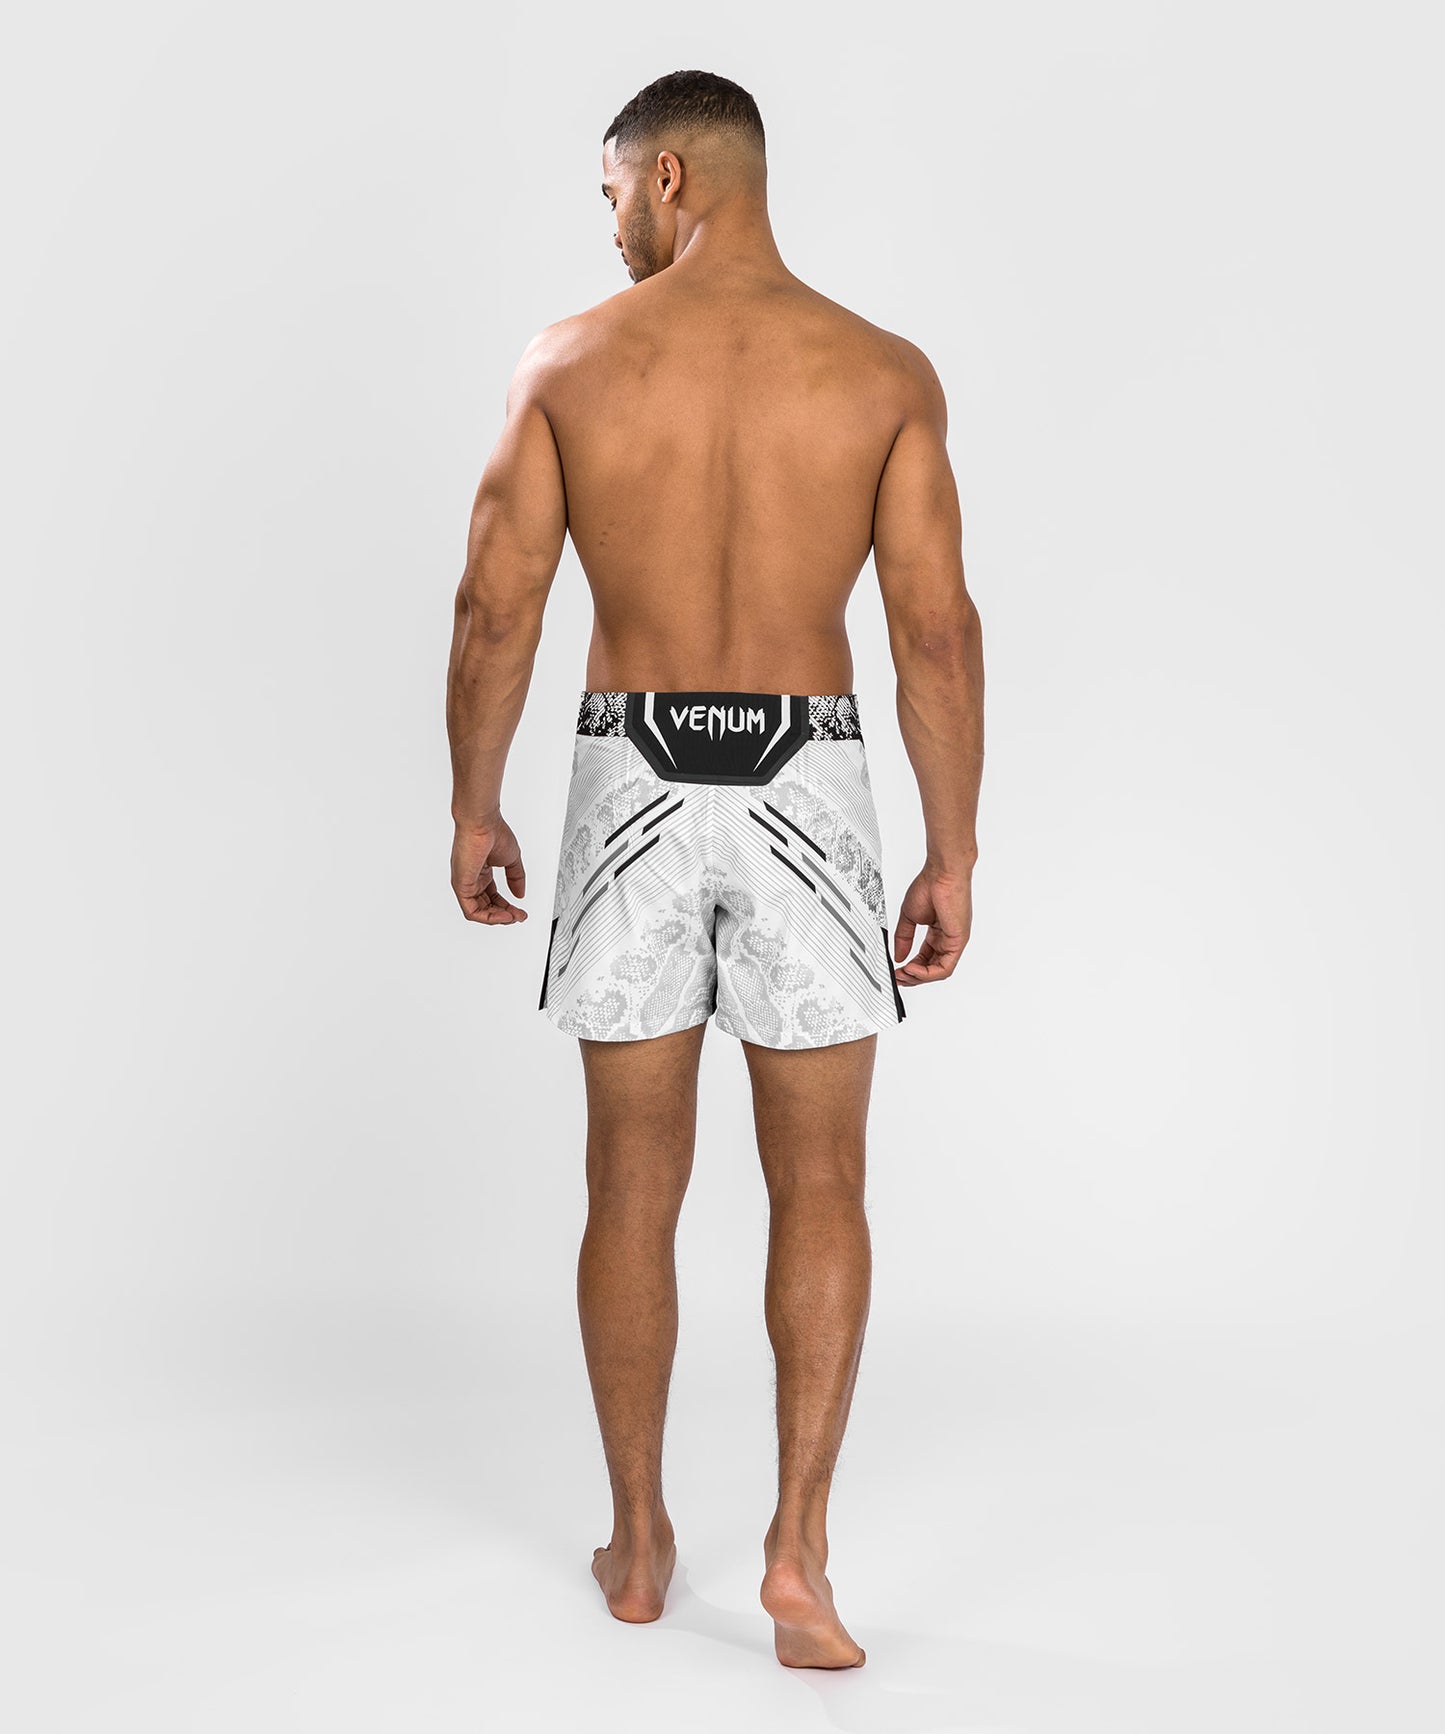 Pantaloncini da combattimento UFC Adrenaline by Venum personalizzati Authentic Fight Night Uomo - Short Fit – Bianco